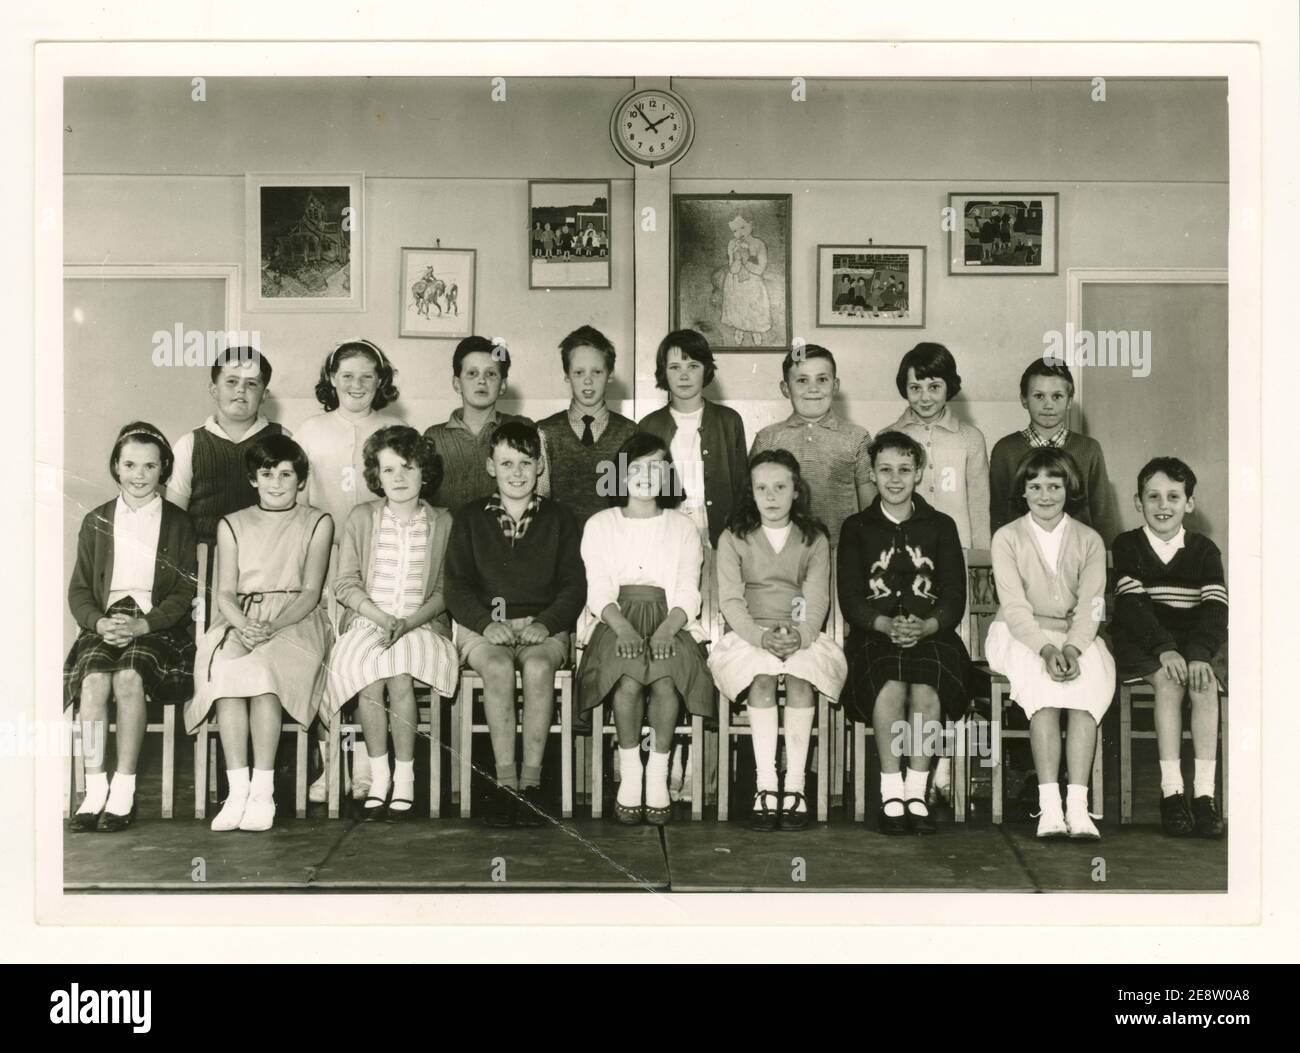 Foto della scuola di gruppo degli anni '60, scuola elementare di Mowmacre, studenti junior di 10 o 11 anni, Leicester, Regno Unito datata 1963 Foto Stock